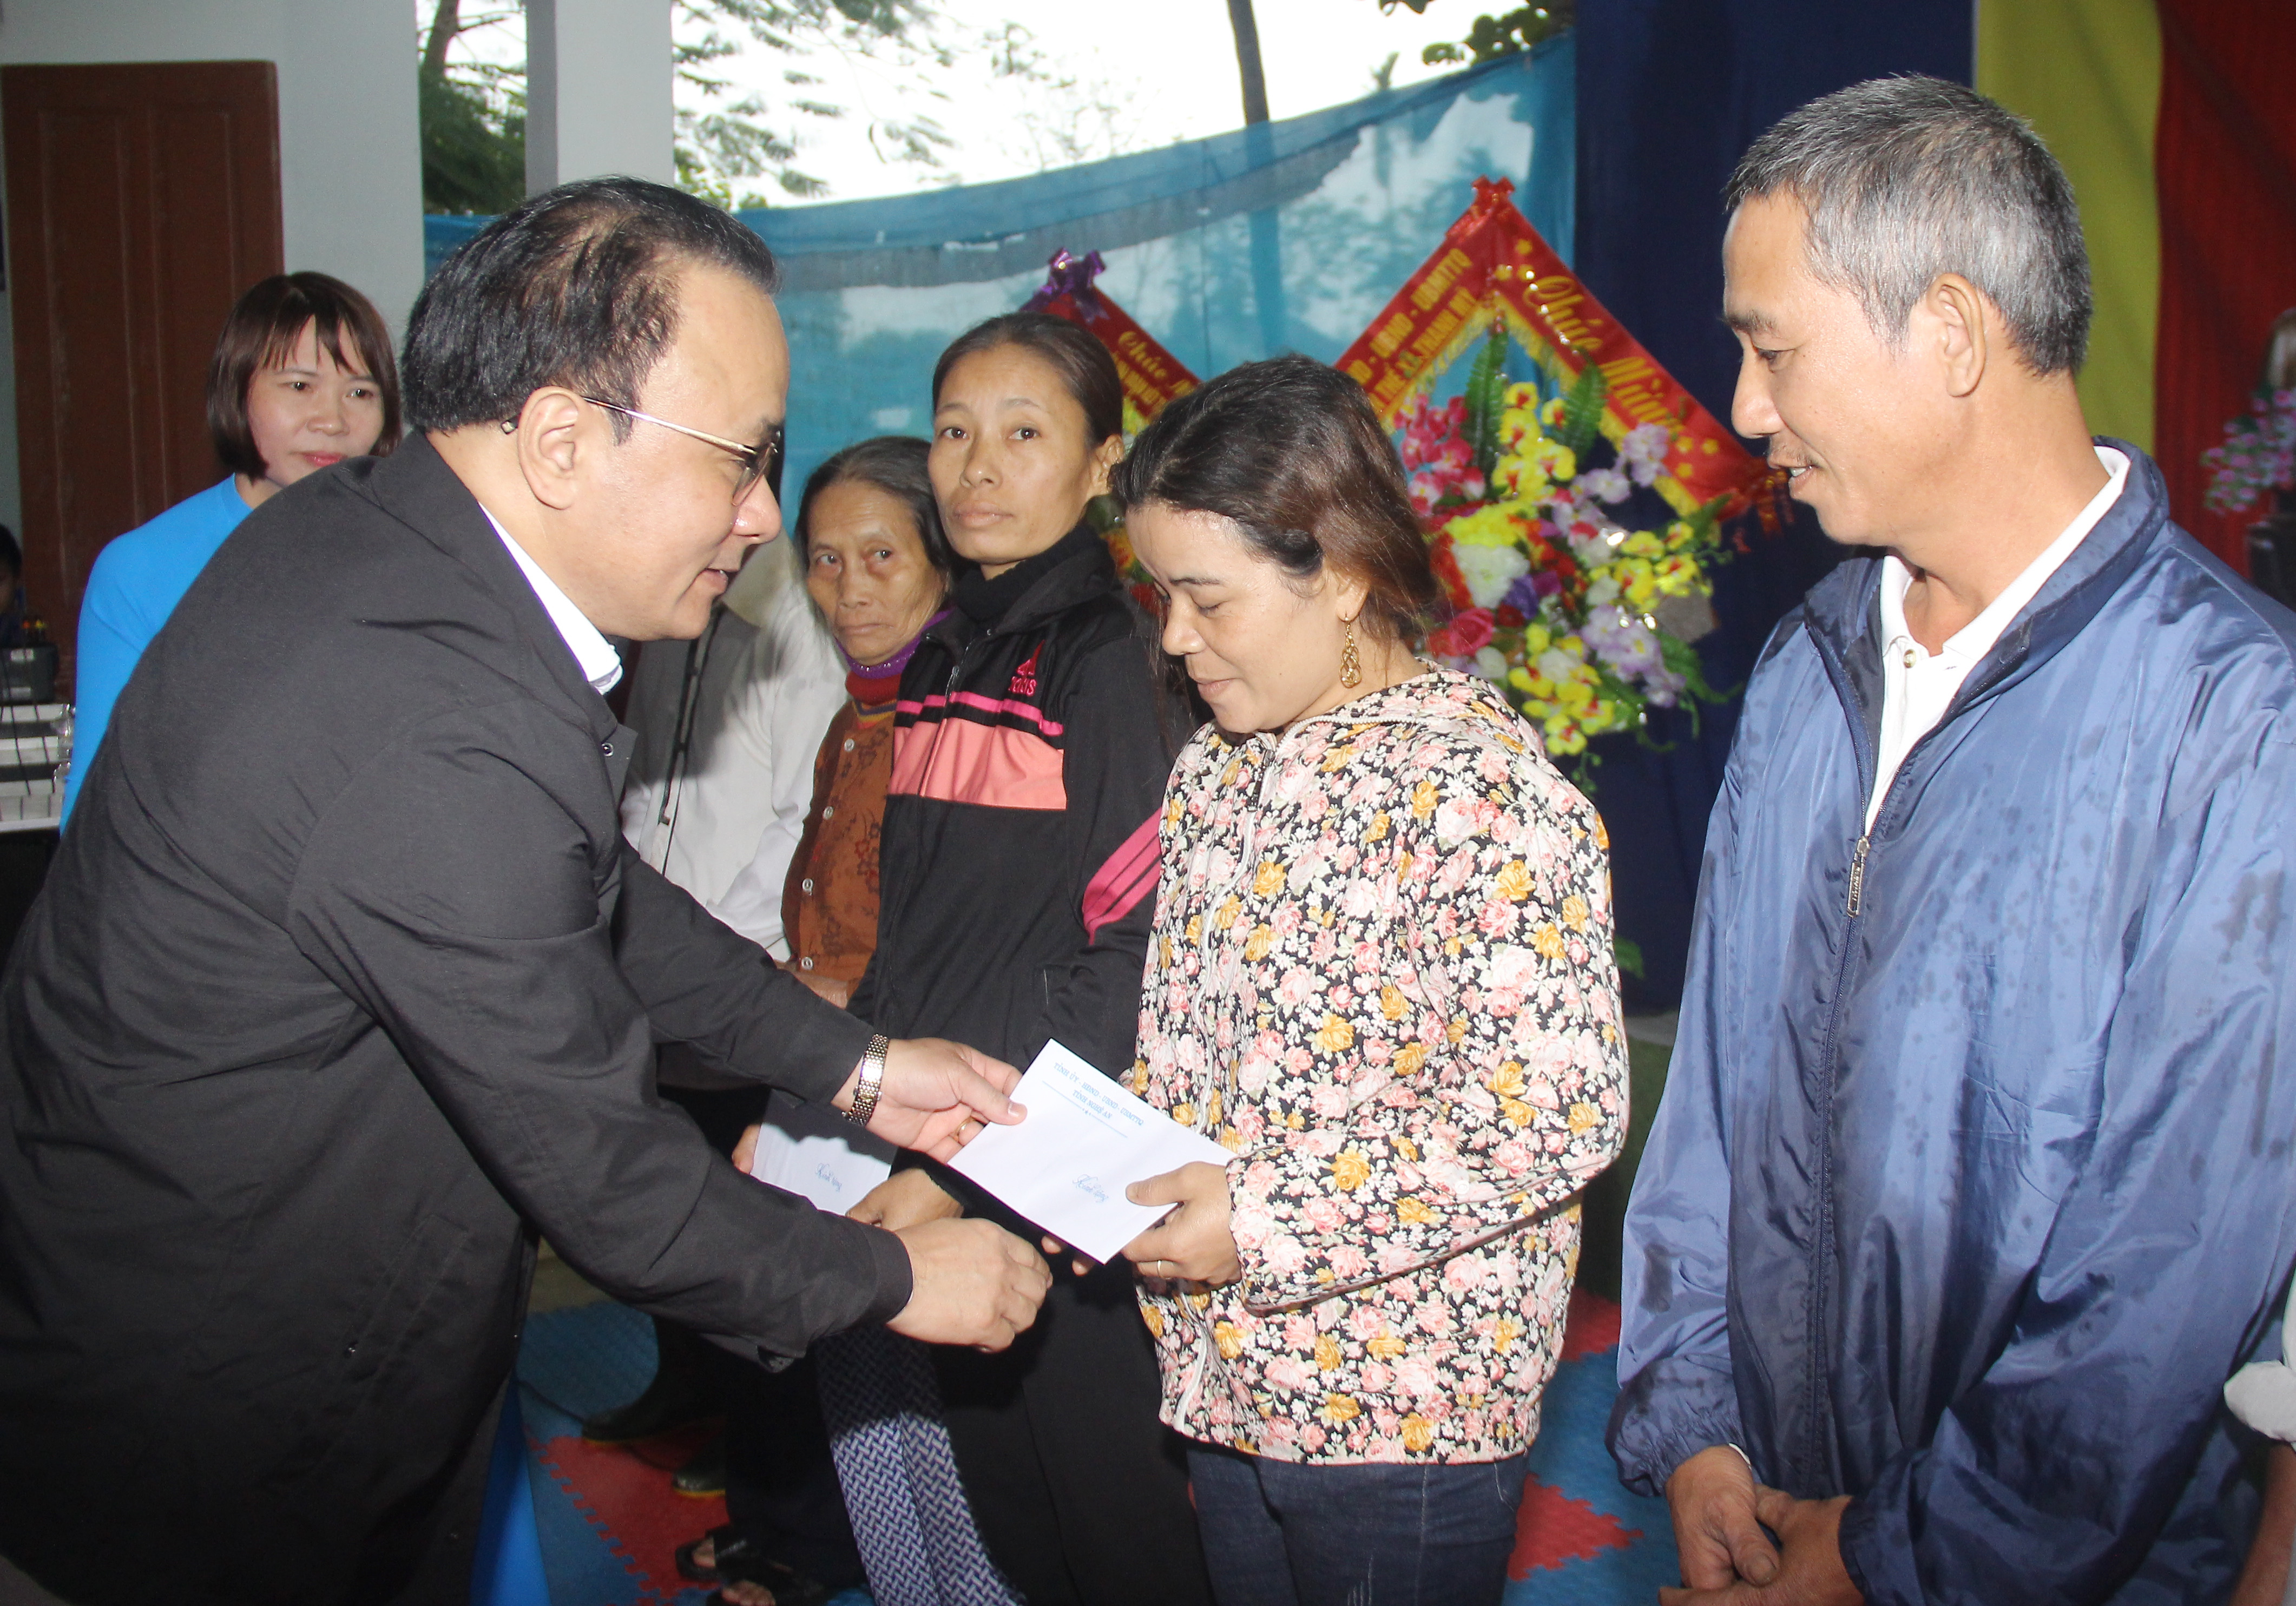 Đồng chí Nguyễn Nam Đình - Ủy viên Ban Thường vụ Tỉnh ủy, Bí thư Đảng ủy Khối các cơ quan tỉnh tặng quà cho các hộ nghhèo. Ảnh: Mai Hoa